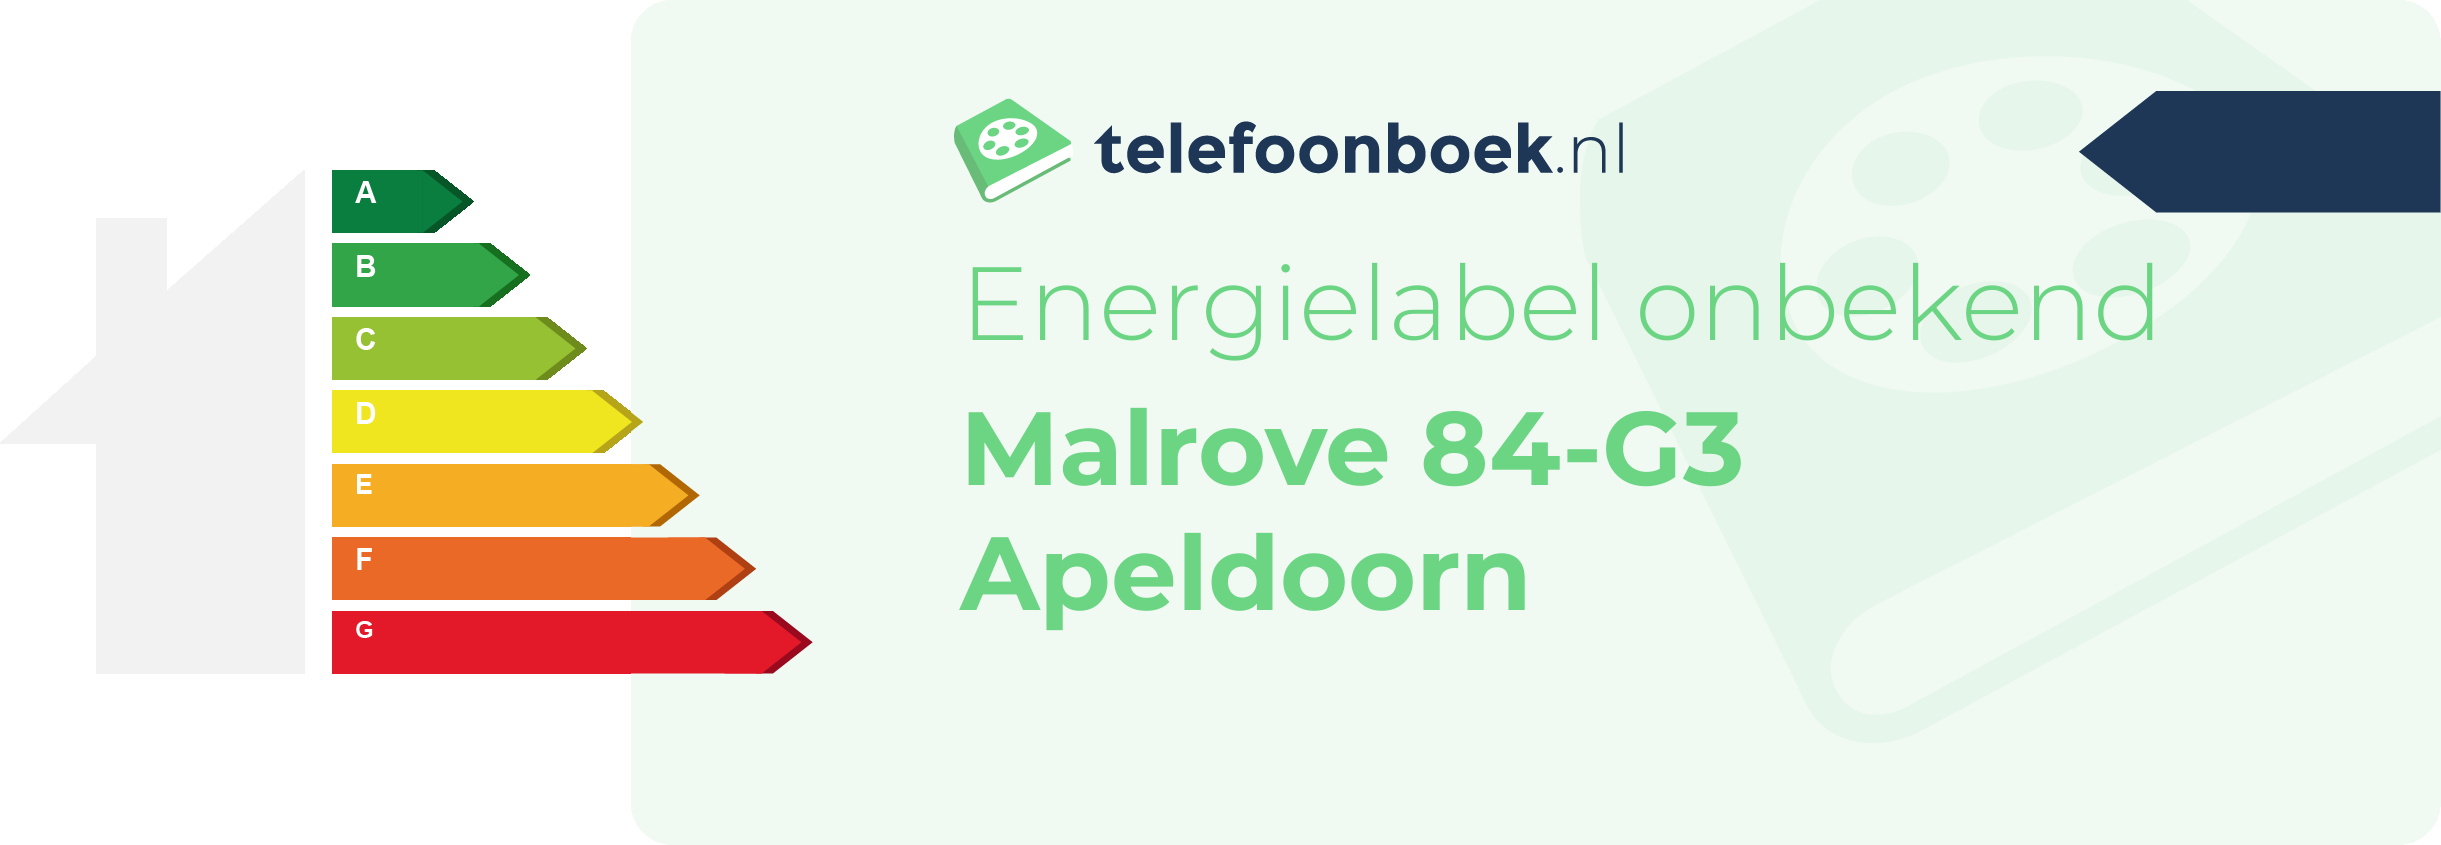 Energielabel Malrove 84-G3 Apeldoorn